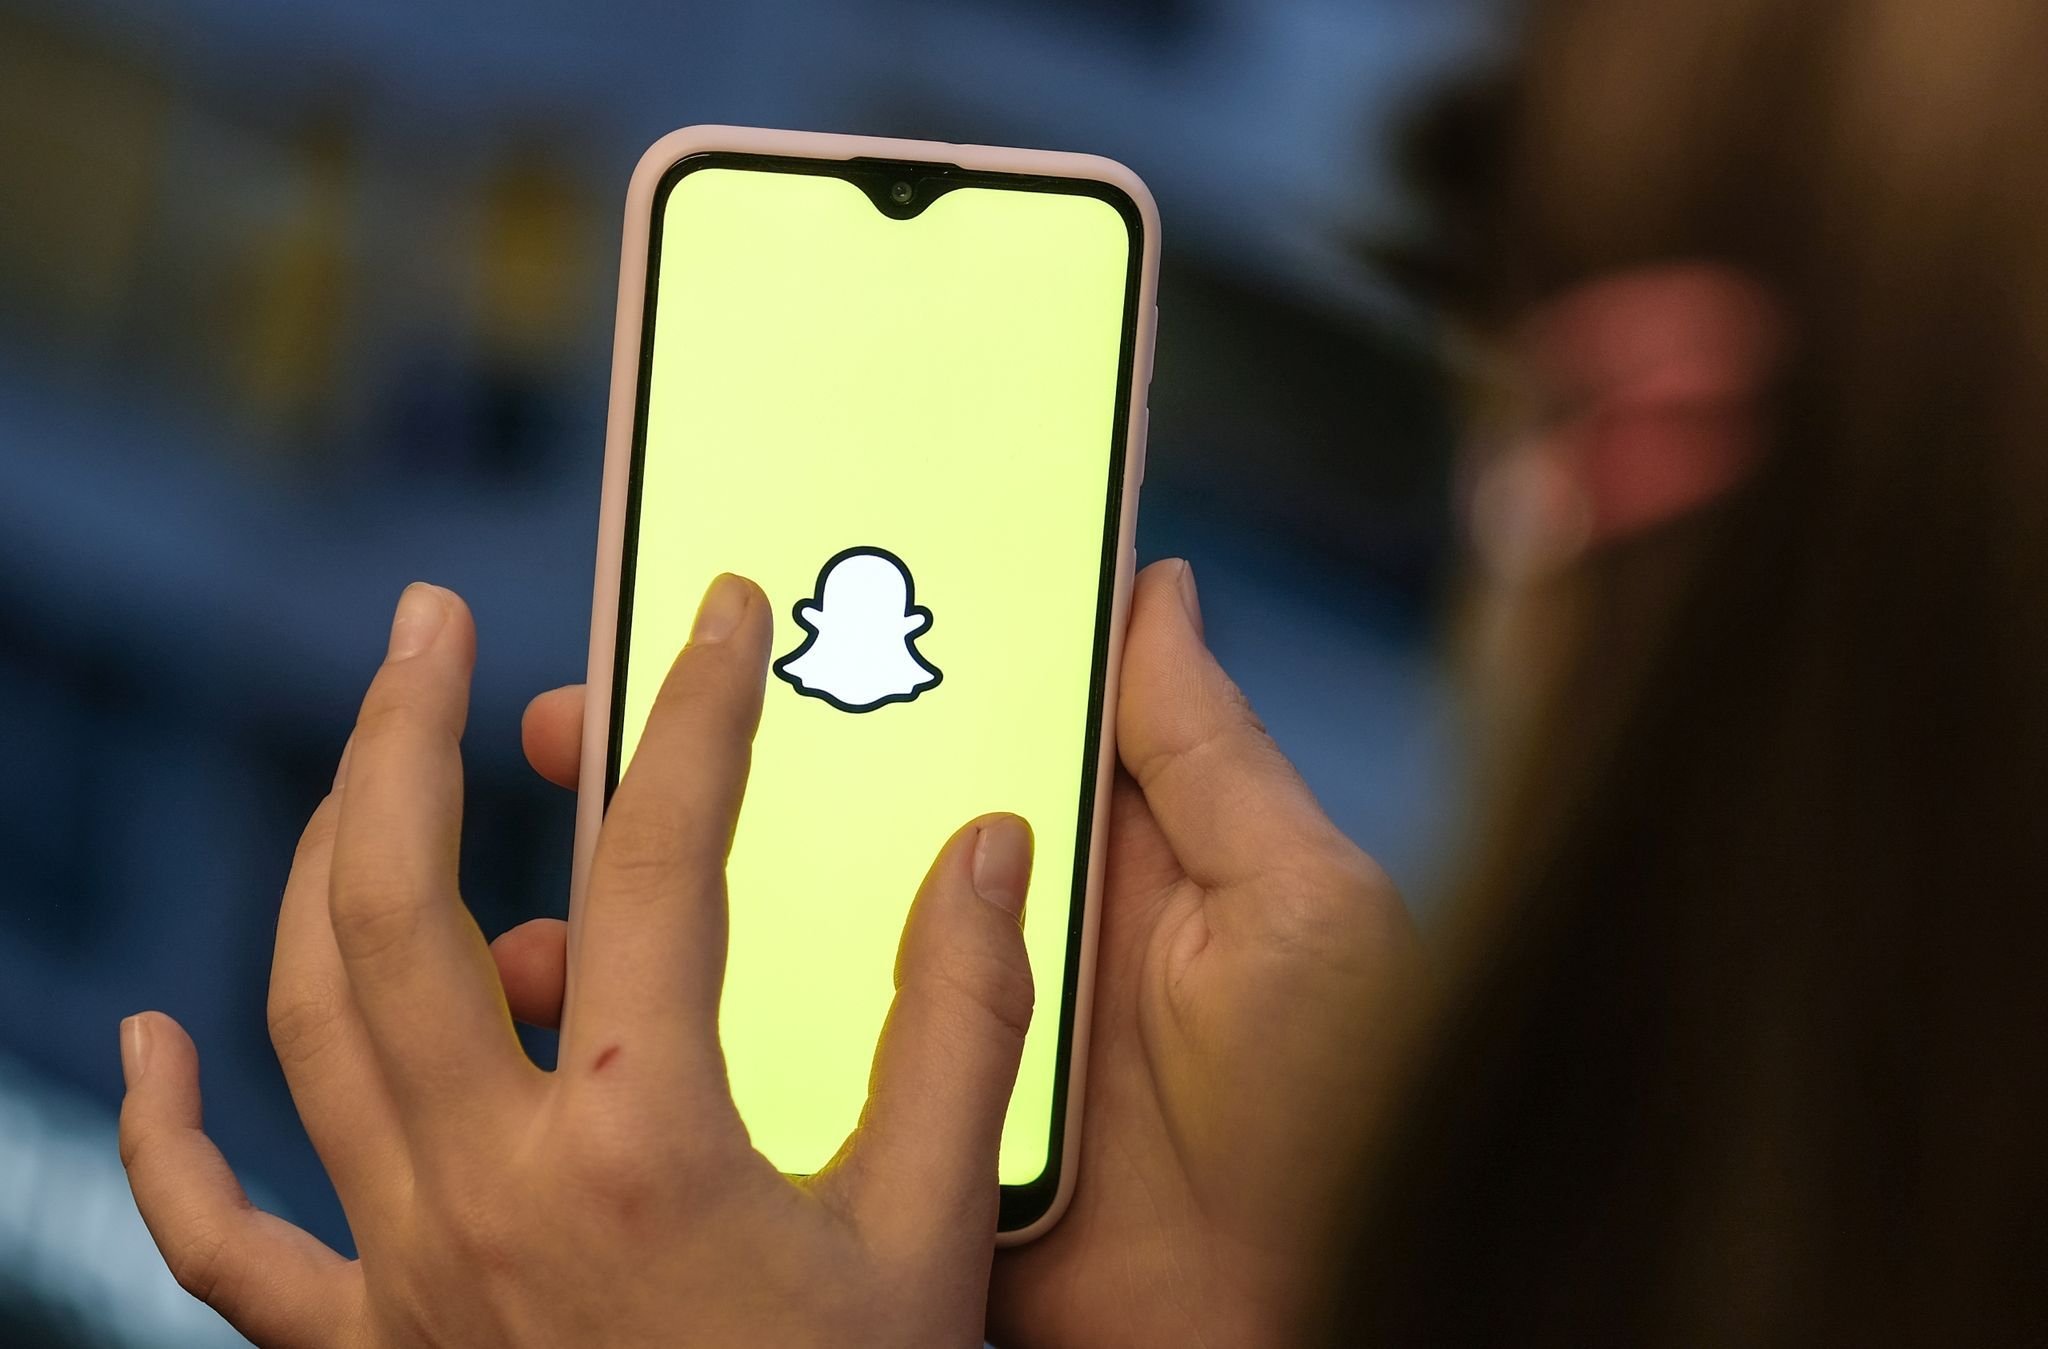 Social Media: Snapchat-Geschäft deutlich gebremst - Aktie sackt ab